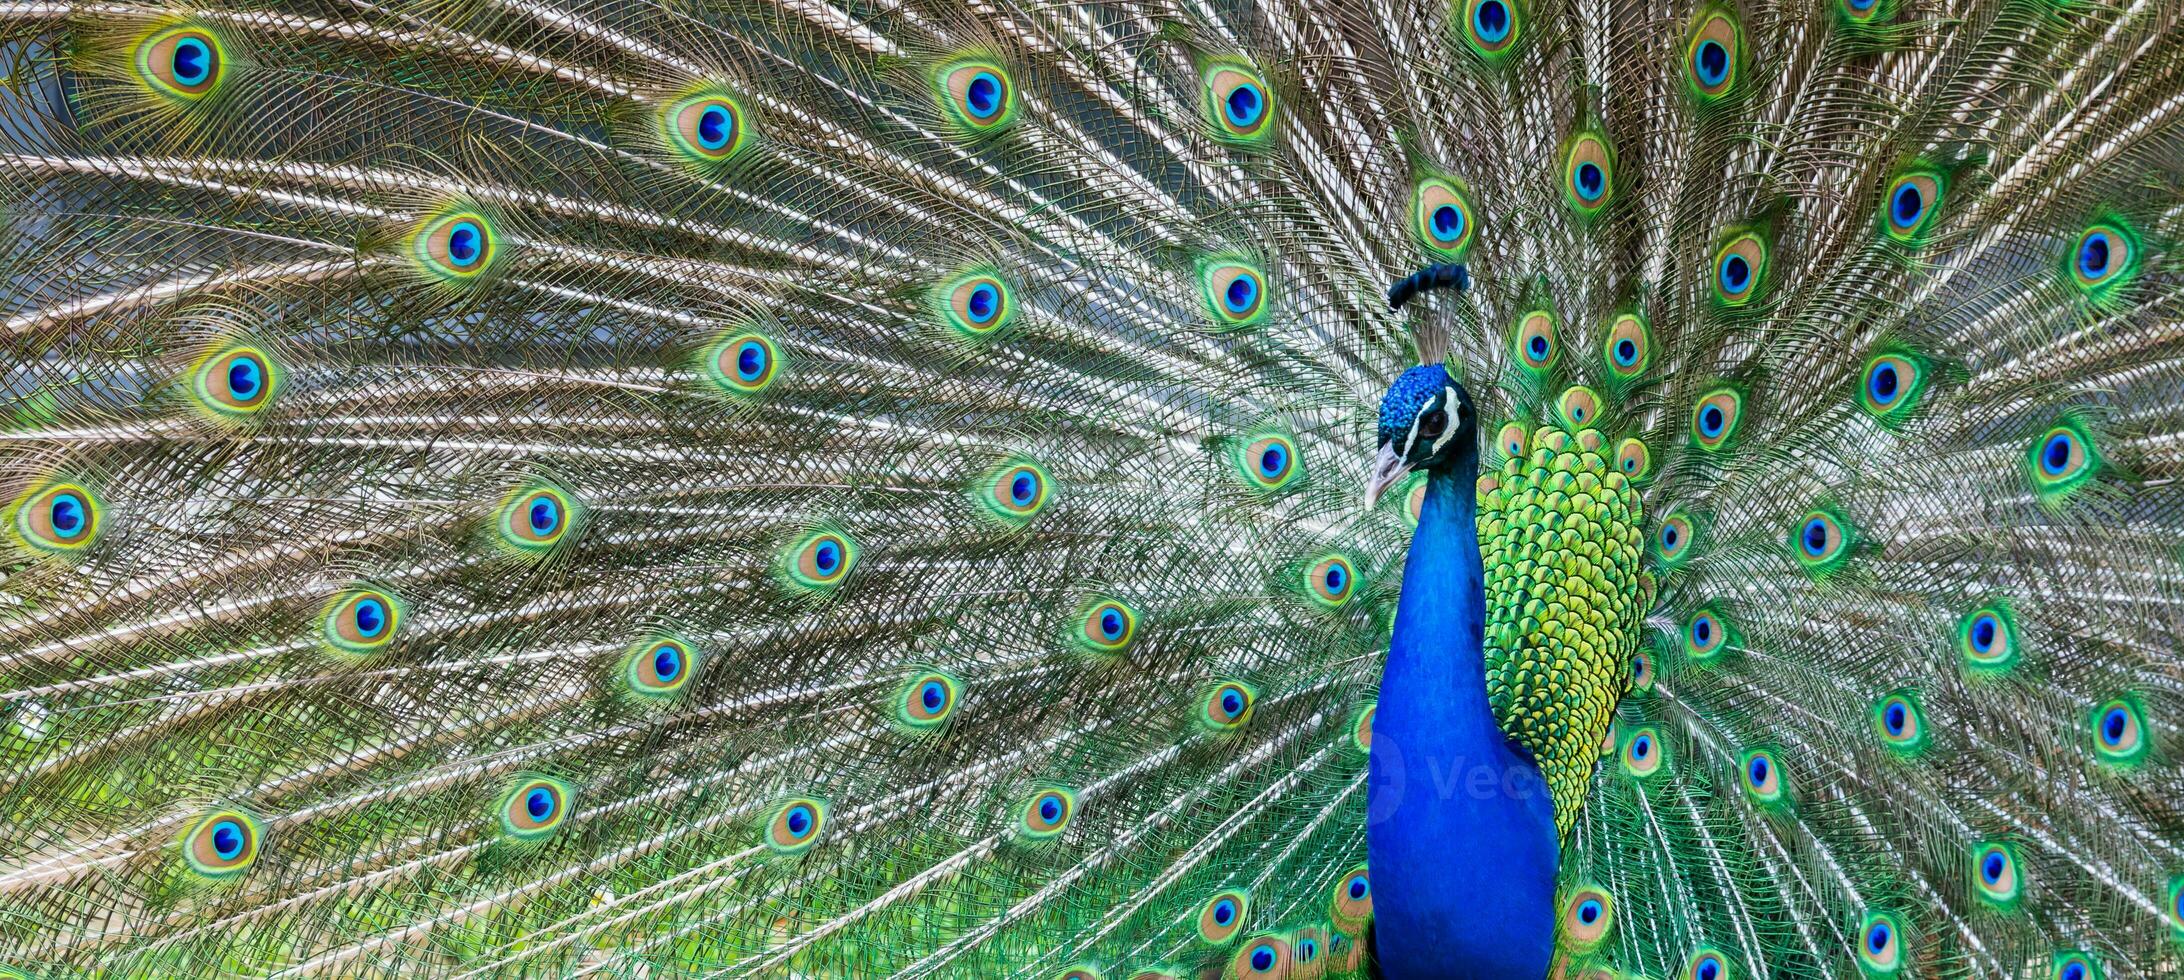 Peacock portrait. Beautiful colourful peackock feather photo